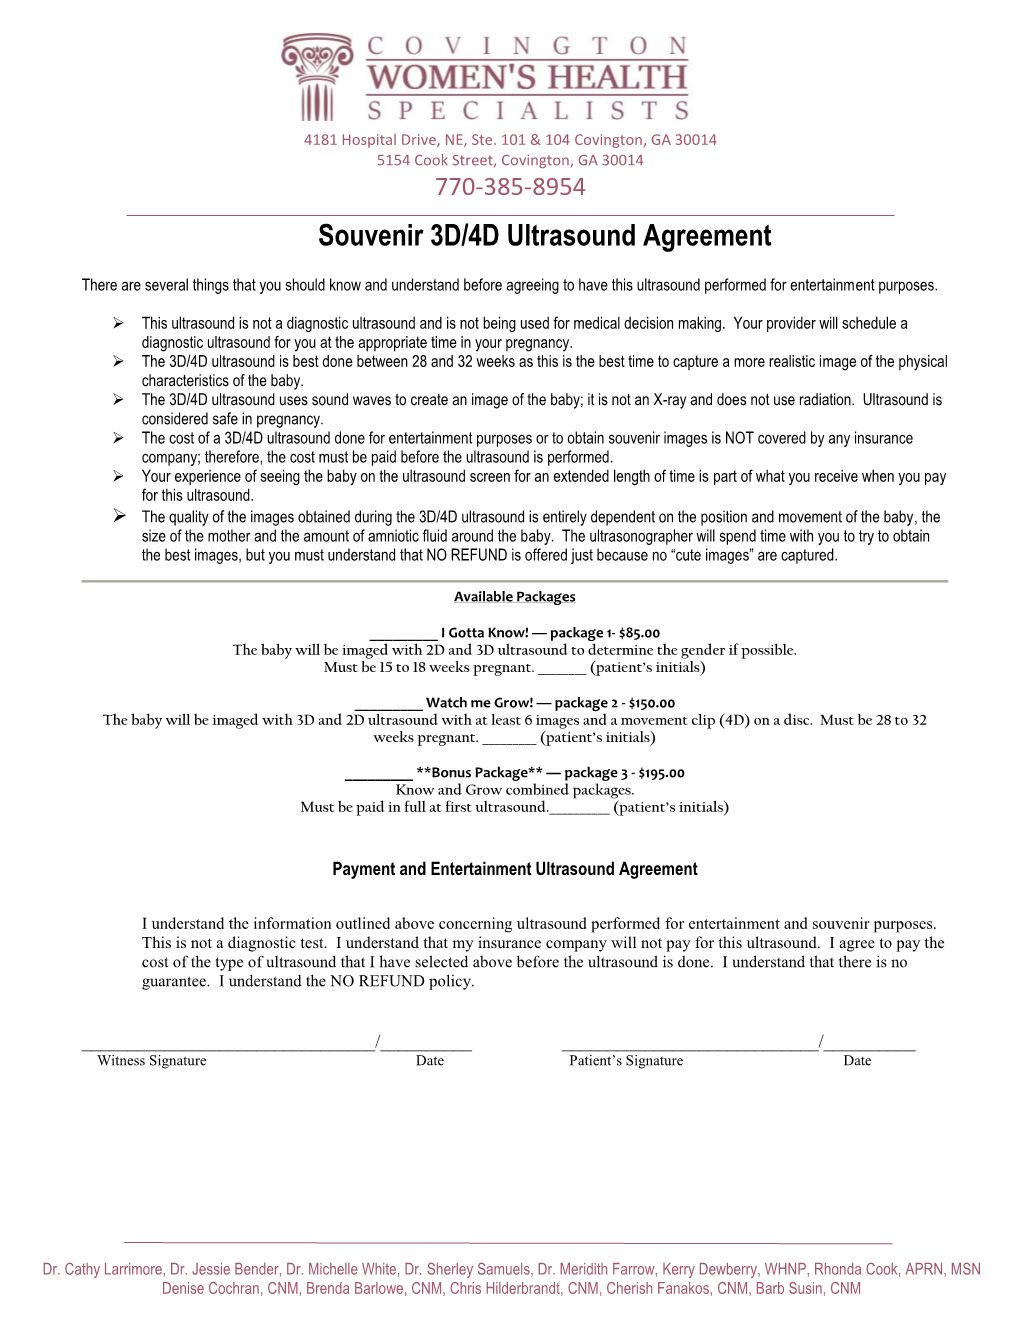 Souvenir 3D/4D Ultrasound Agreement